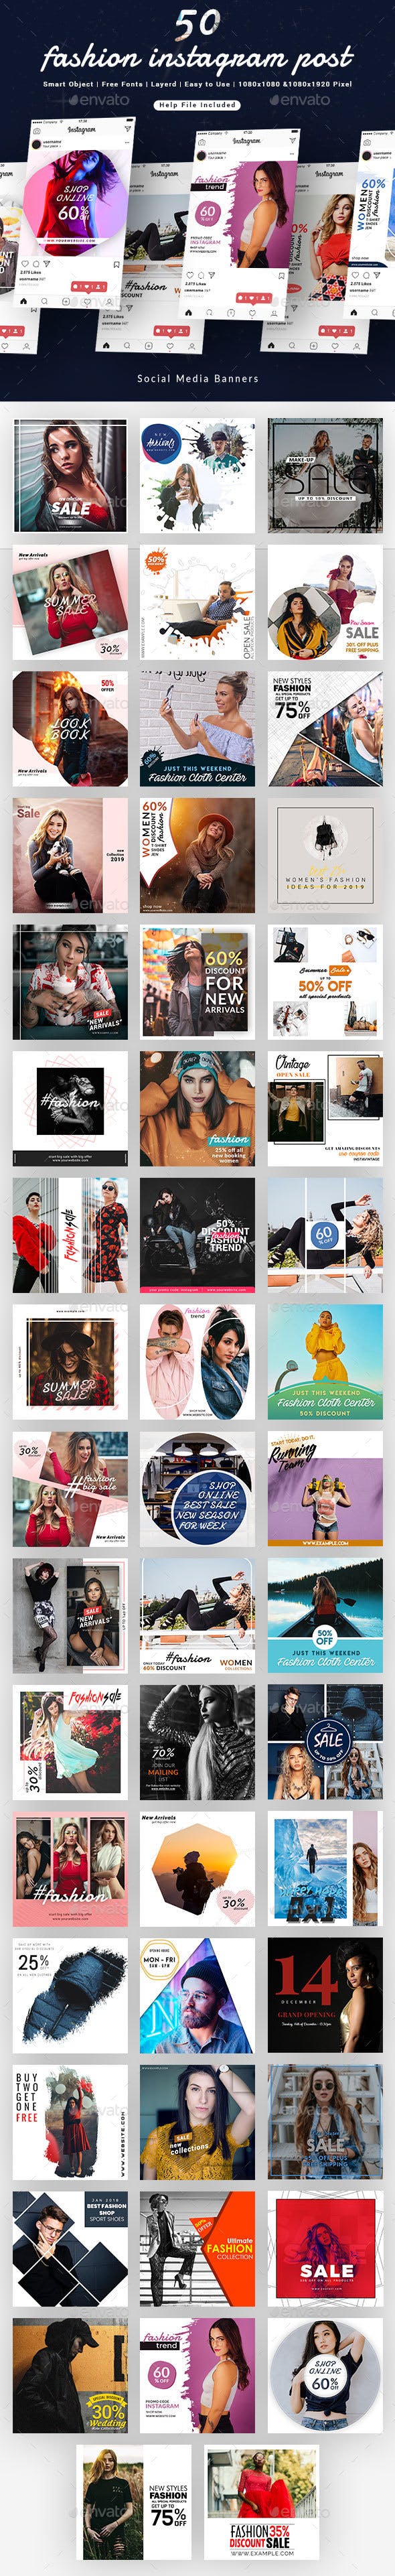 时尚Instagram产品广告促销帖子模板素材库精选插图